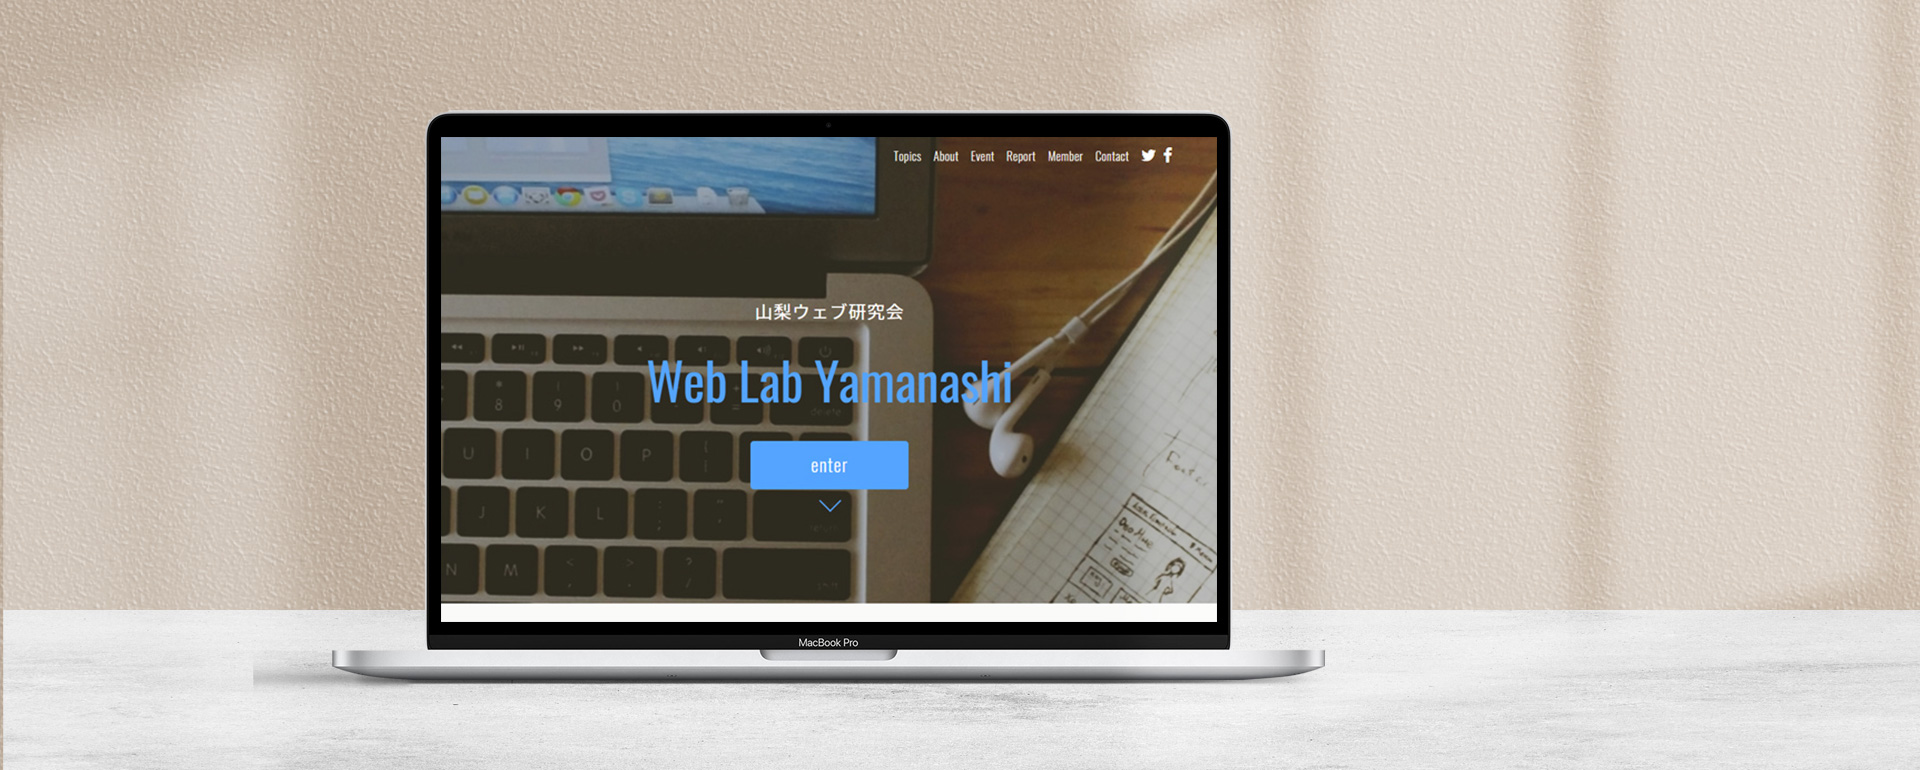 山梨ウェブ研究会 Web Lab Yamanashi 様